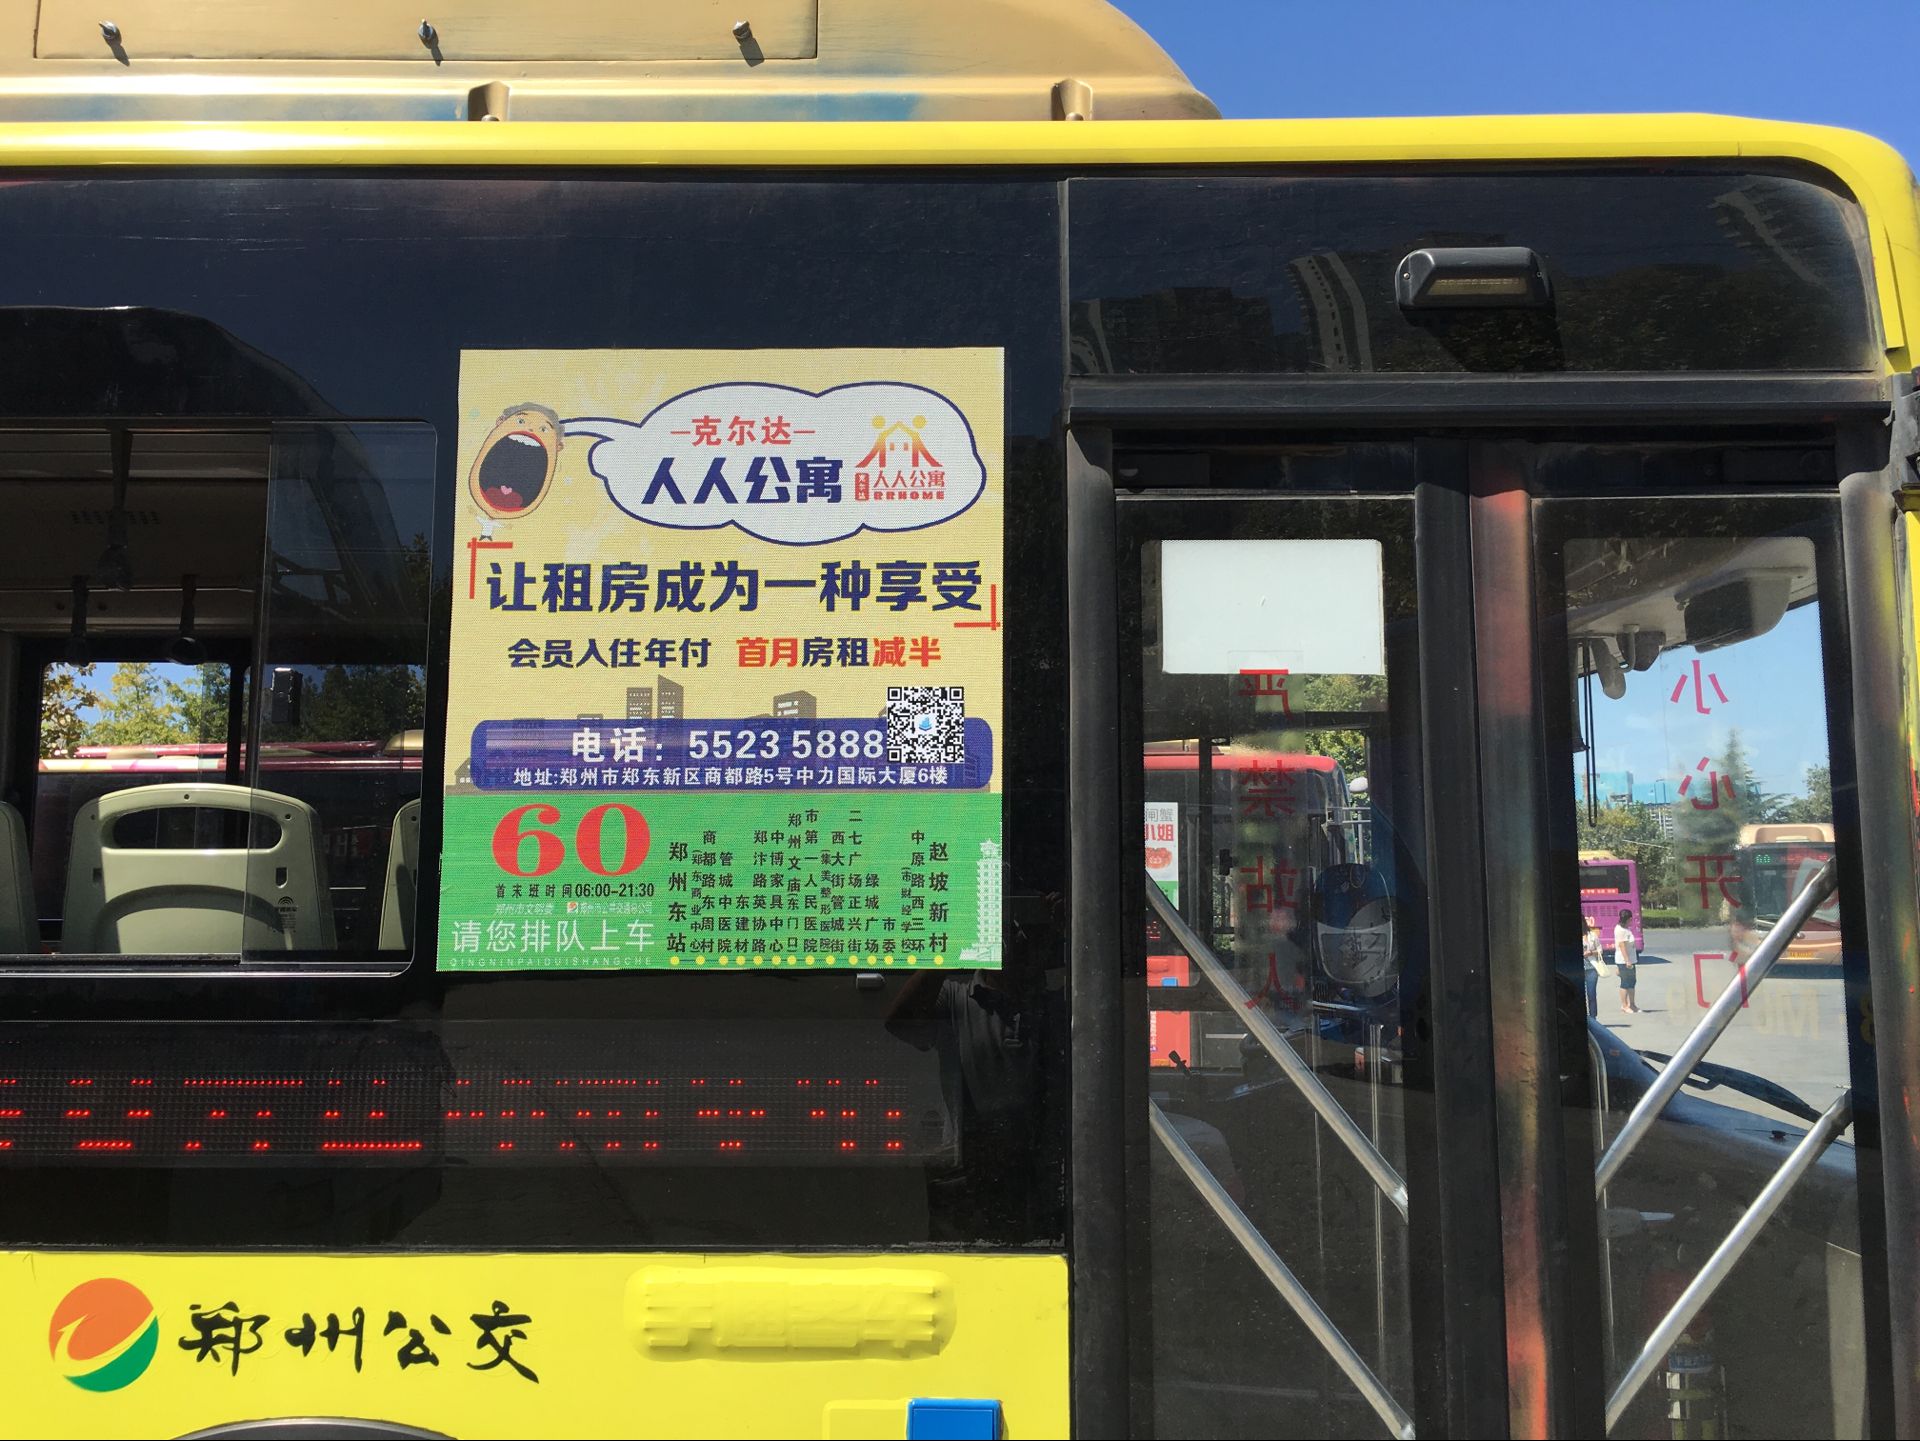 郑州公交车窗广告公司 郑州新之航公交车窗广告公司